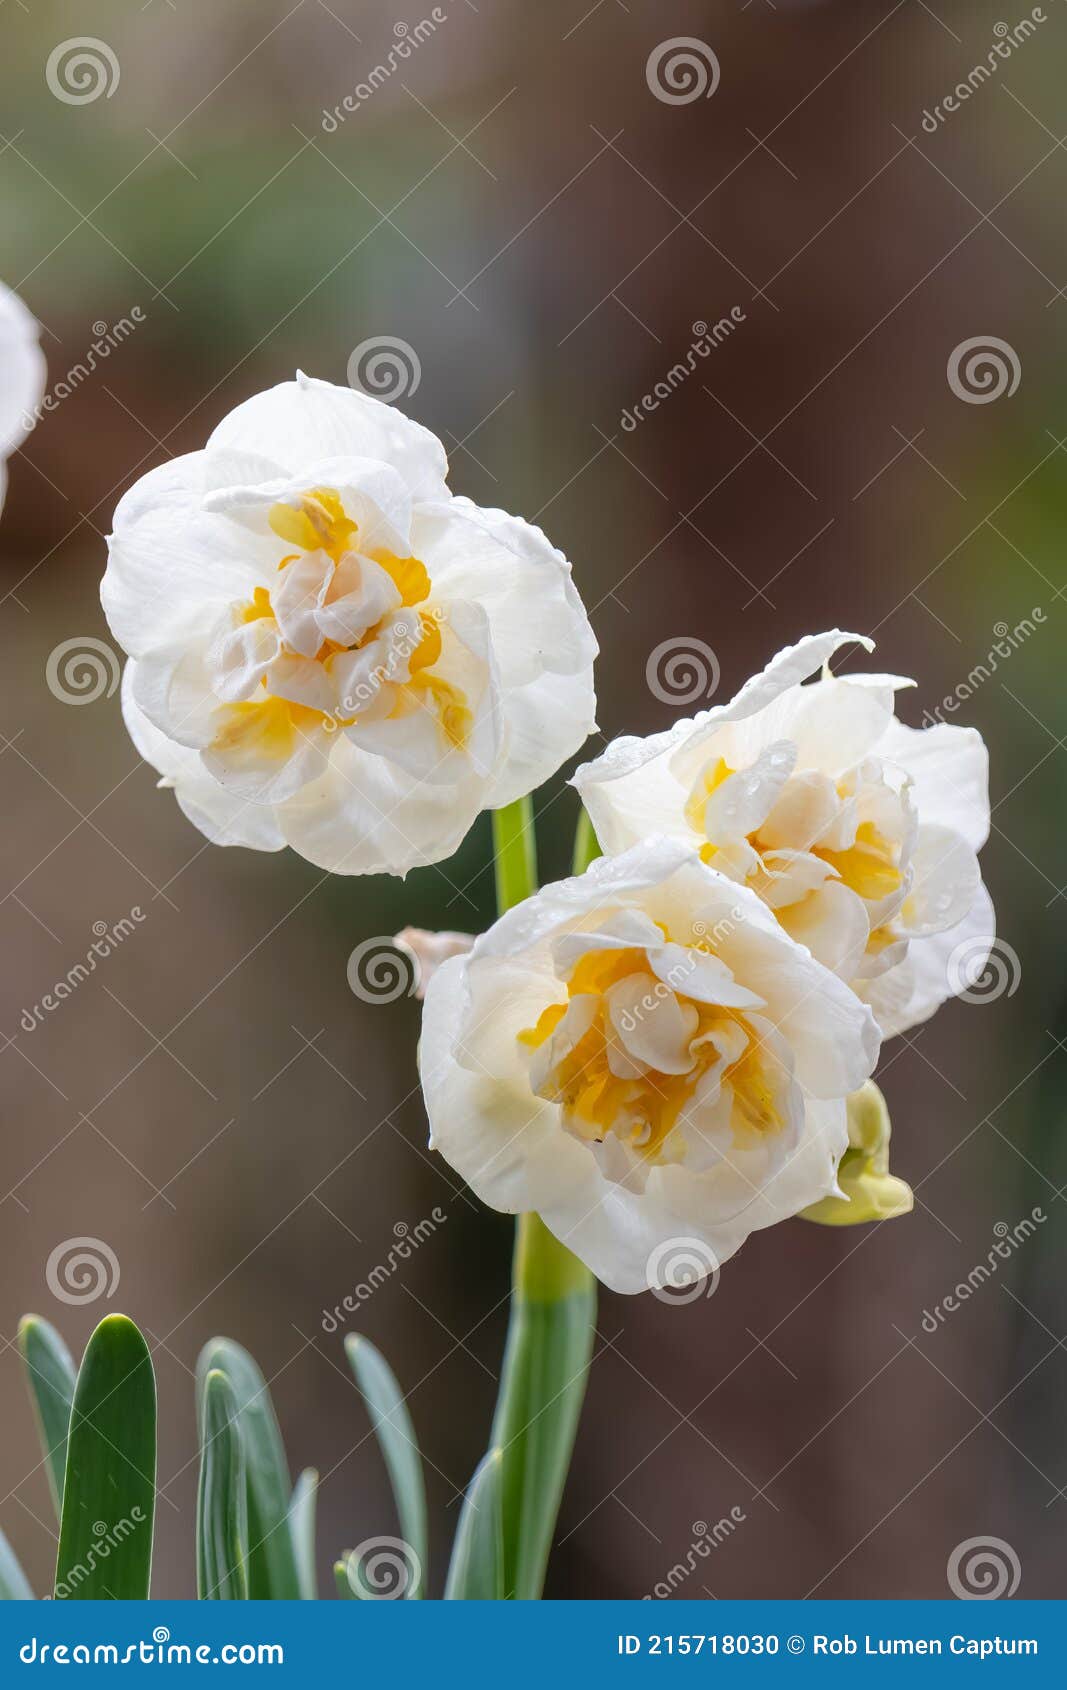 Narcisse Cultivar Daffodil Double étoile Closeup Fleurs Photo stock - Image  du centrale, rempli: 215718030